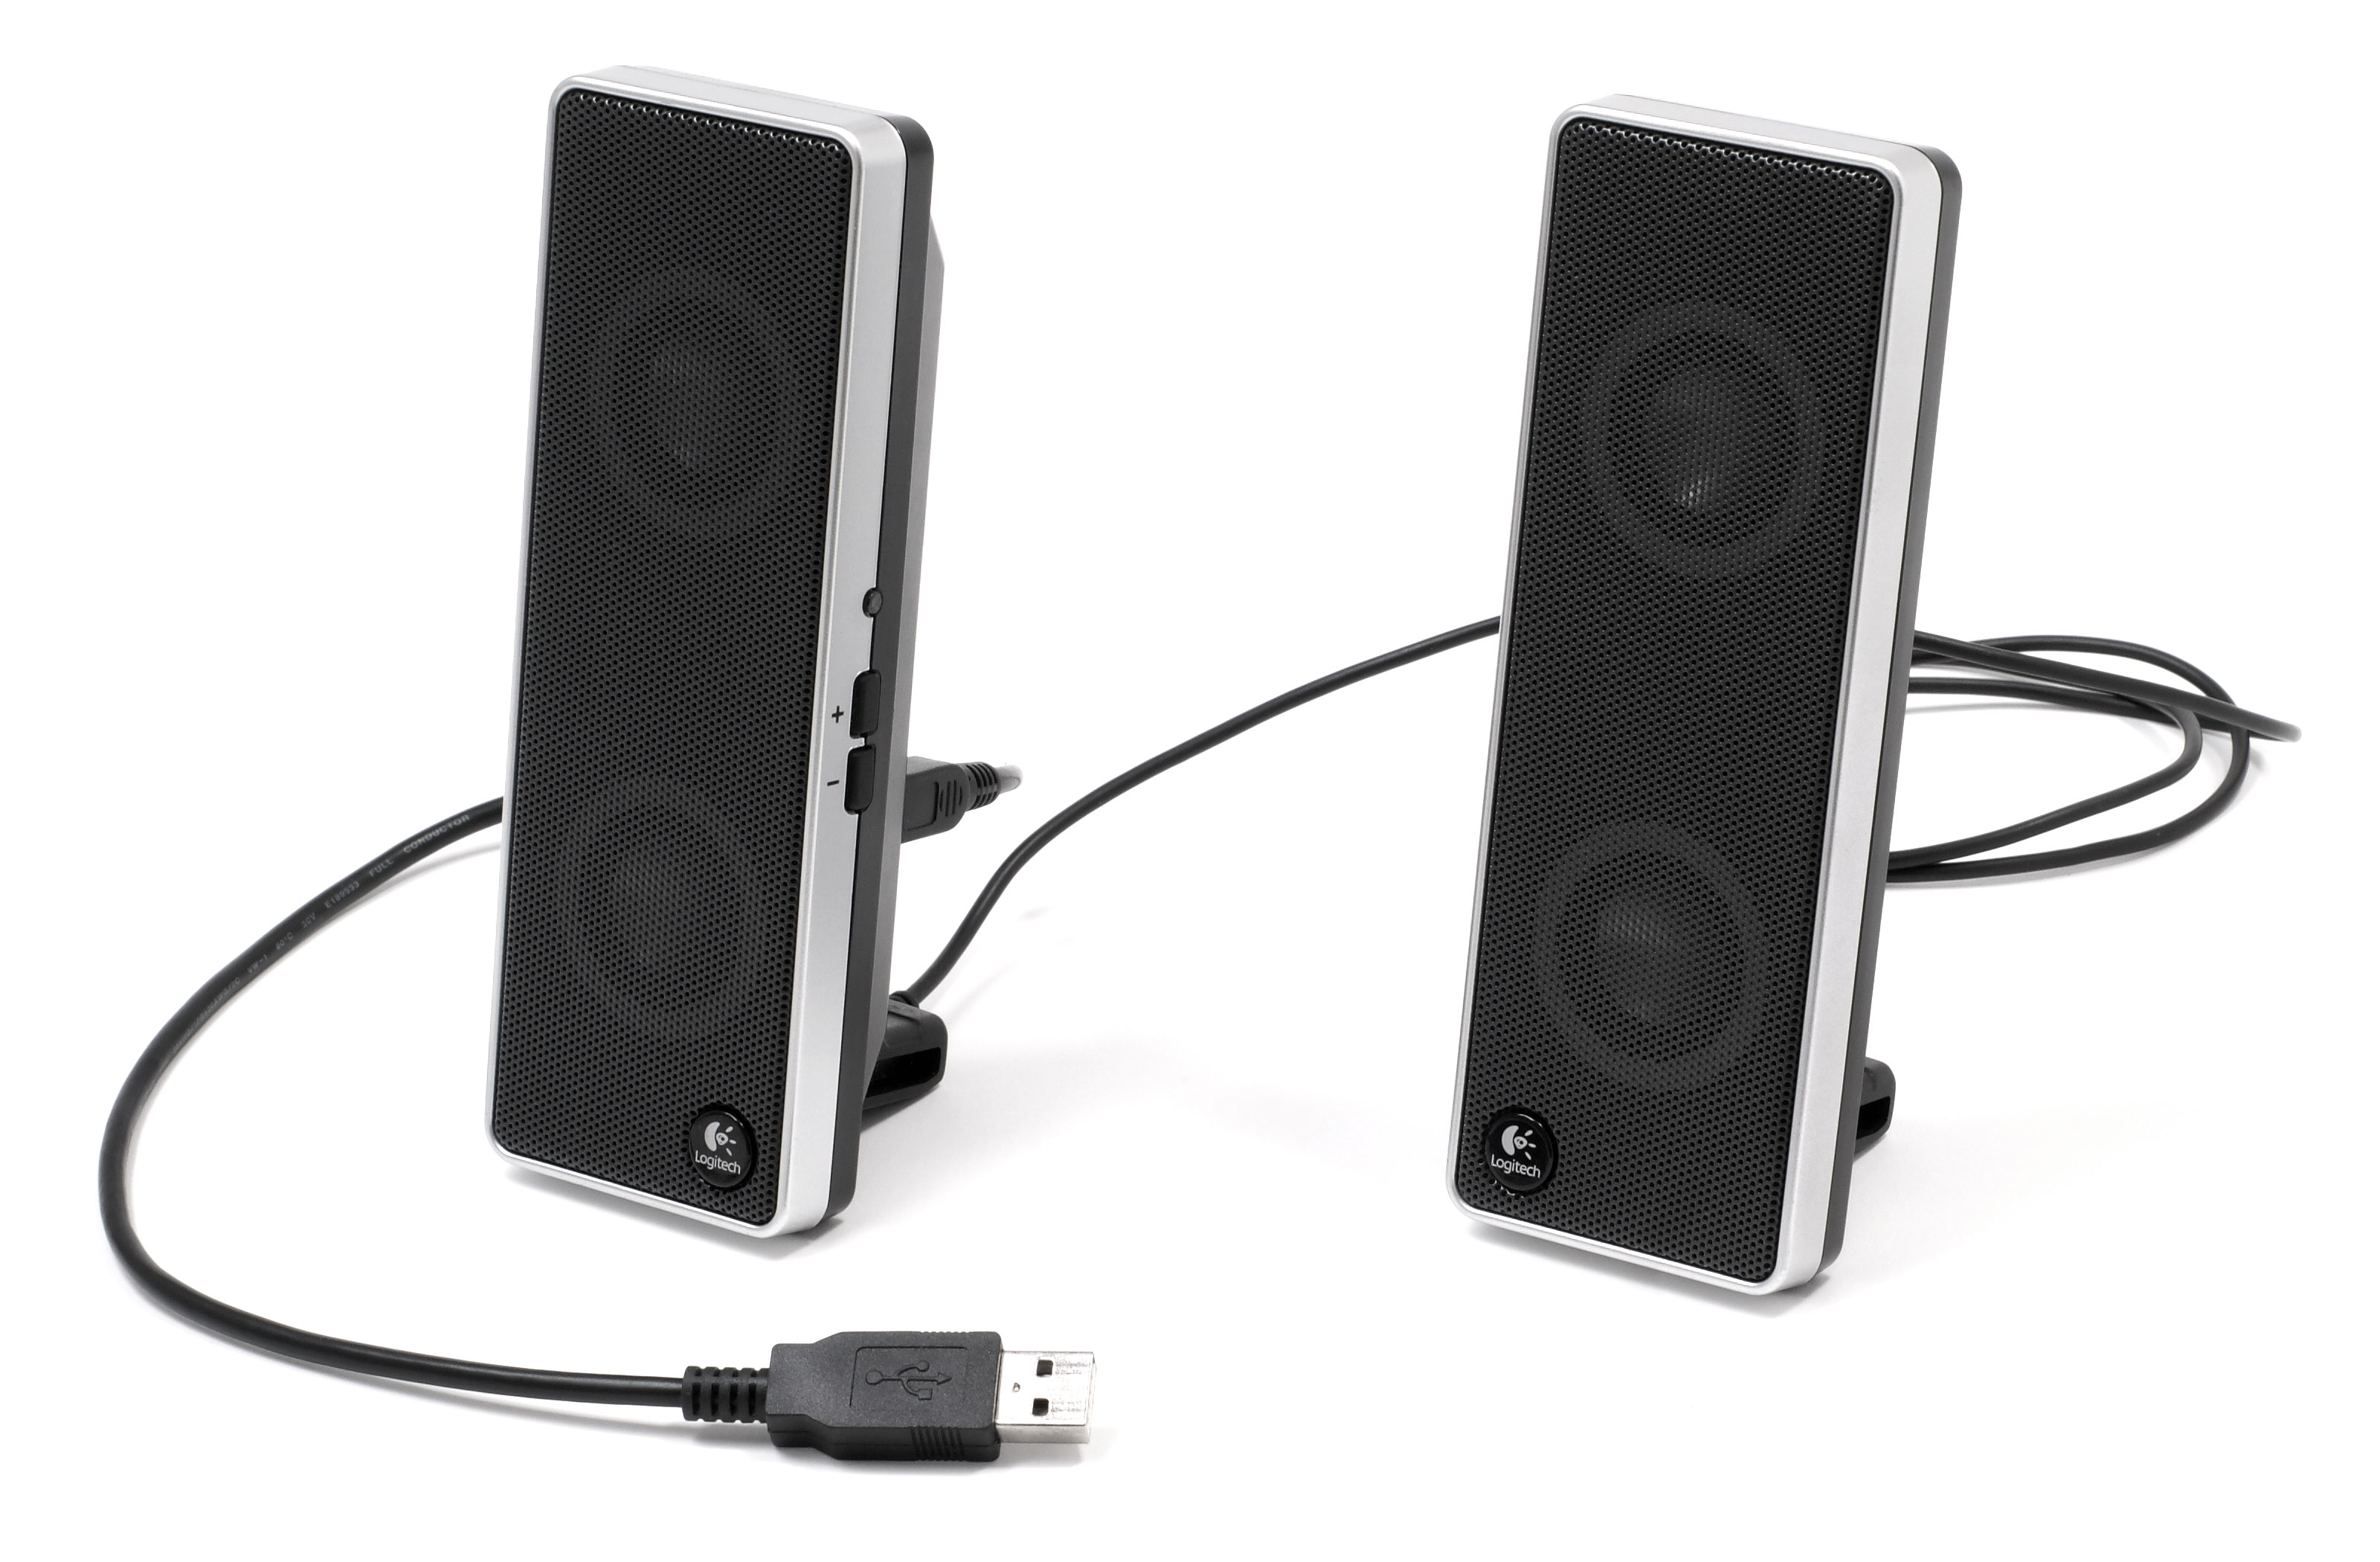 File:Logitech-usb-speakers.jpg